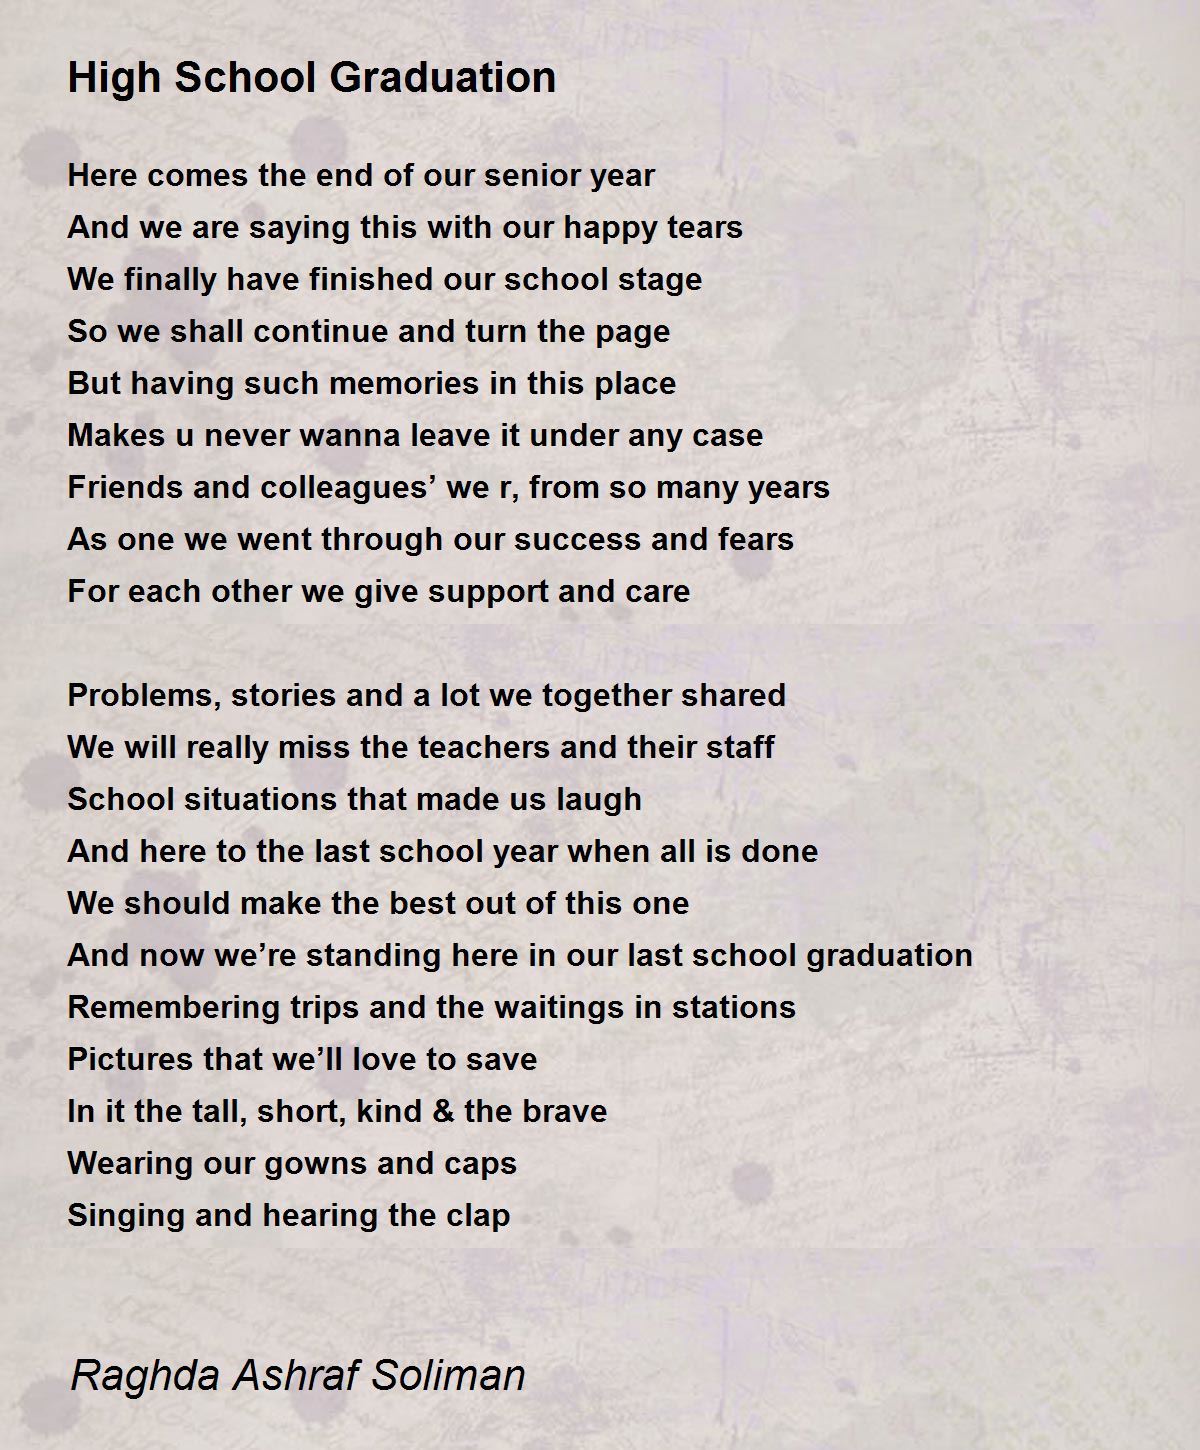 High School Graduation Poem By Raghda